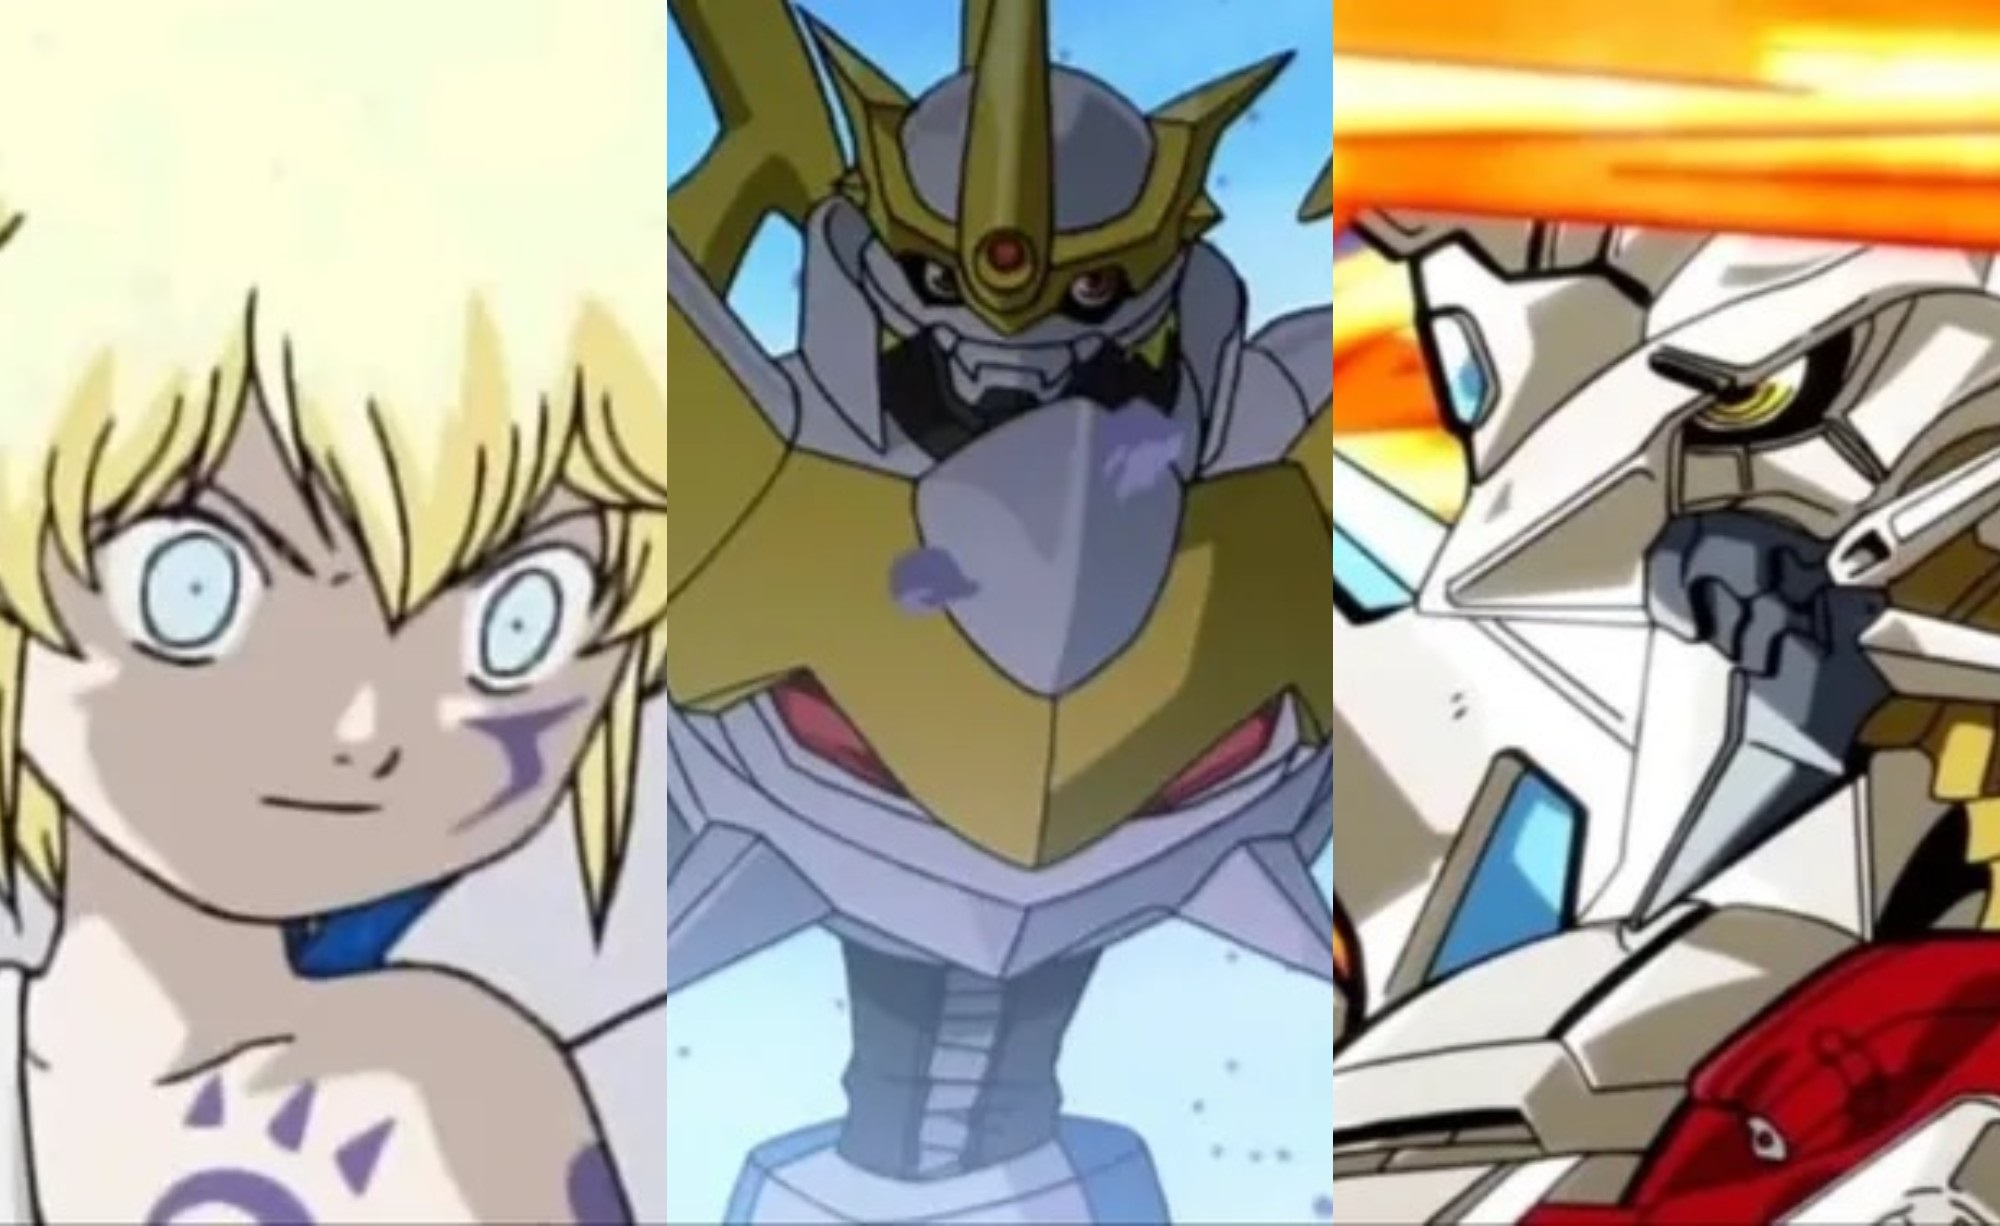 Tudo sobre Digimon!: Mais Informações